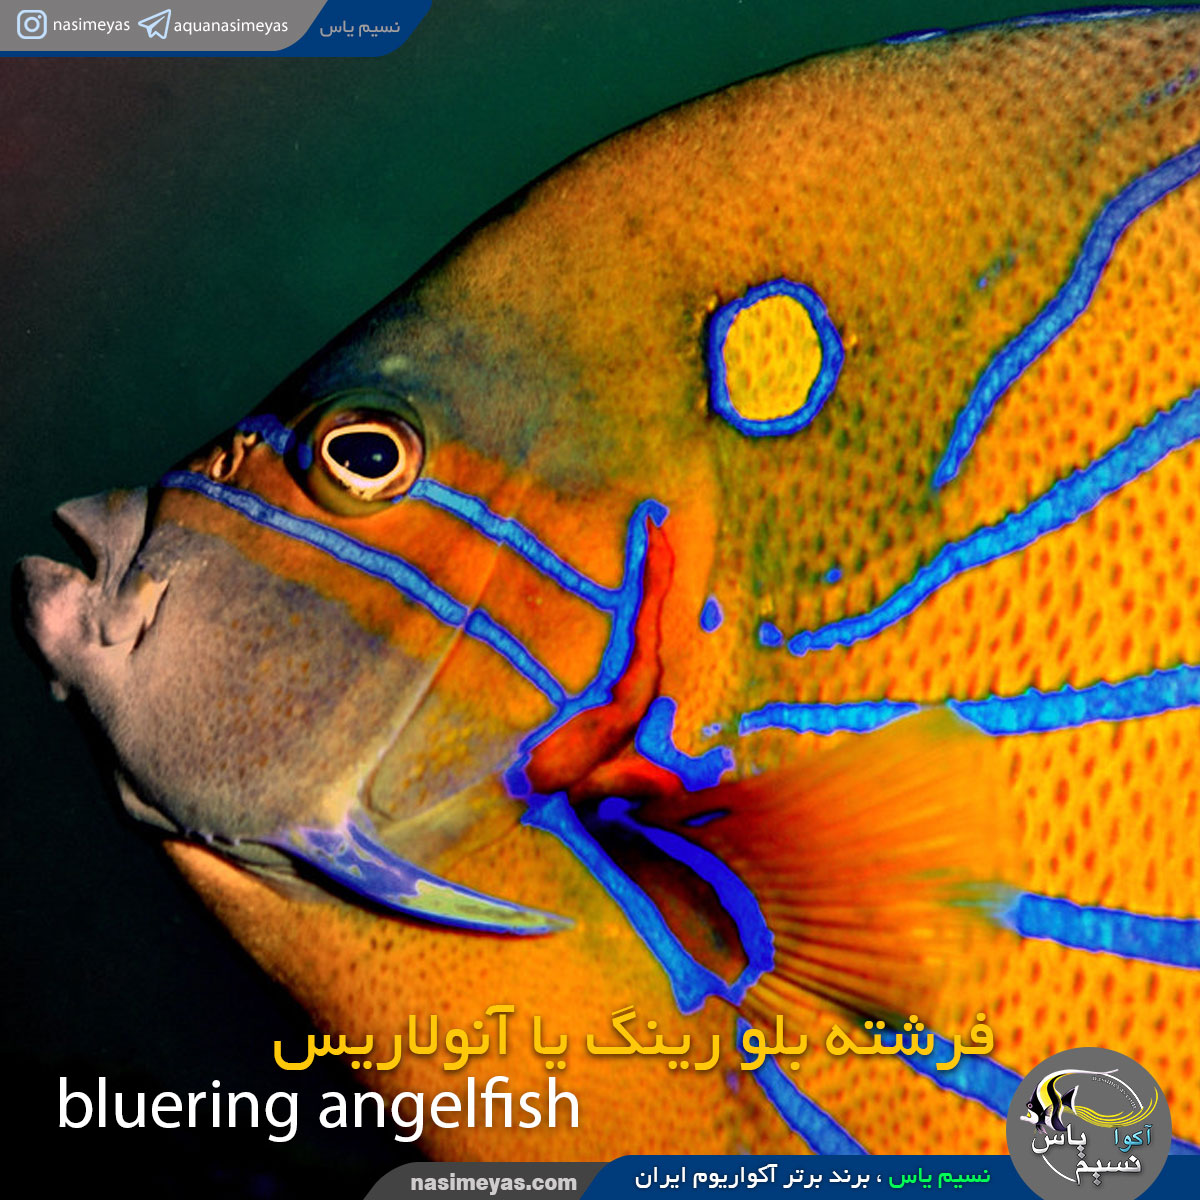 ماهی فرشته بلو رینگ یا آنولاریس بالغ